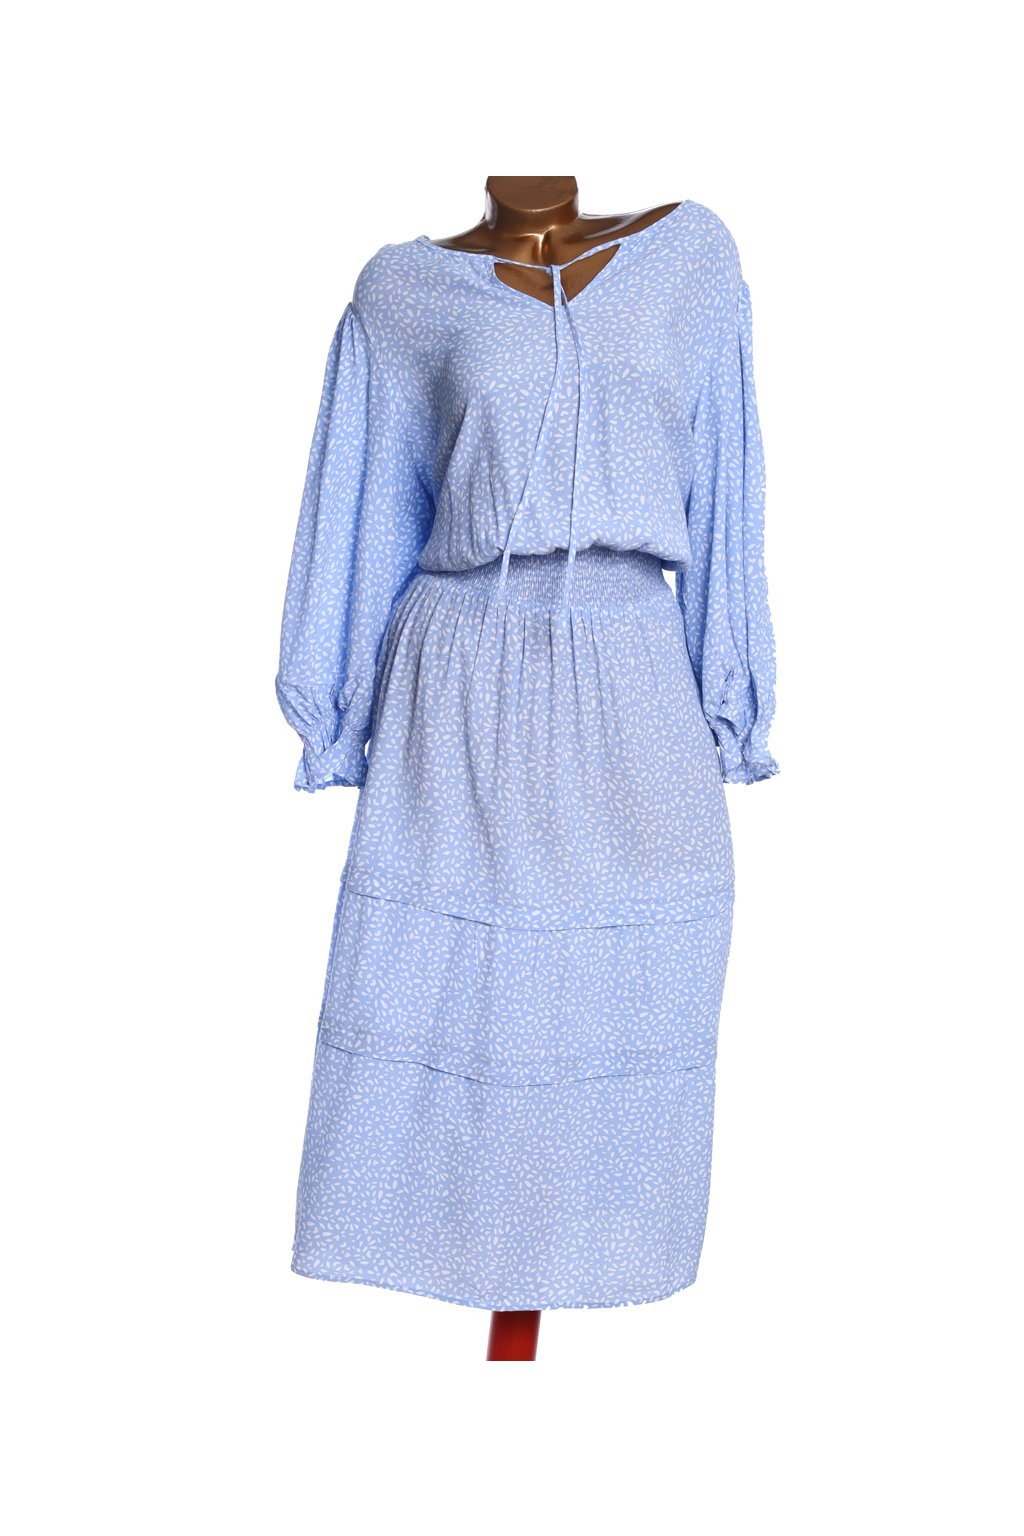 Dámské modro-bílé vzorované šaty / Marks&Spencer / XXXXL / (52) / ANGLIE